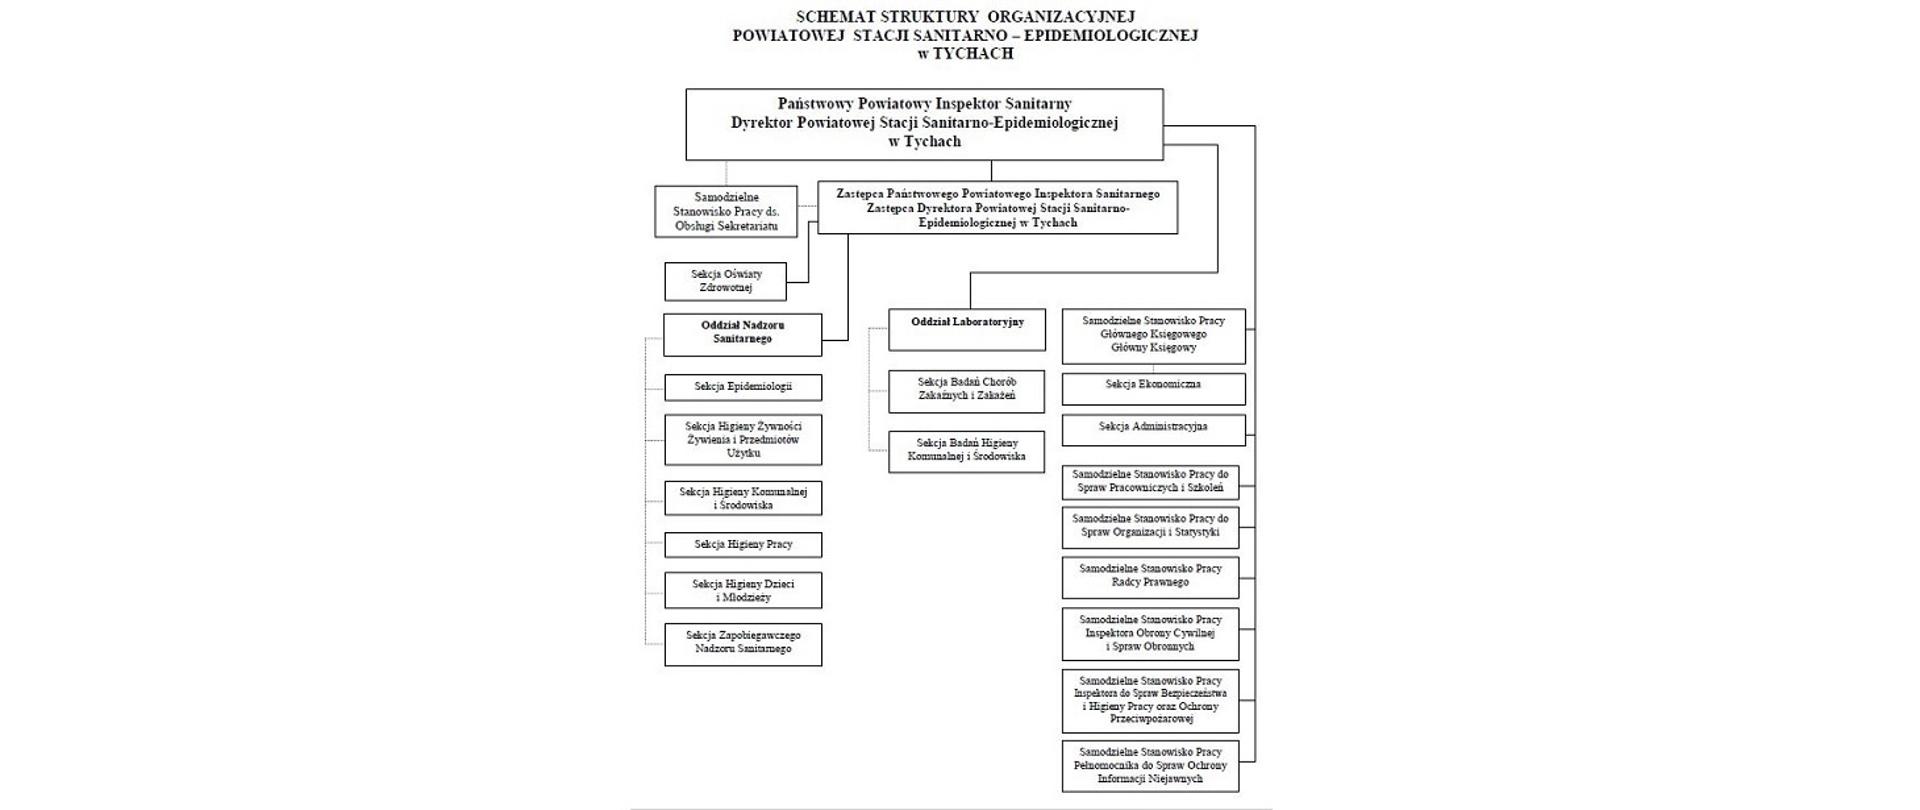 Schemat struktury organizacyjnej Powiatowej Stacji Sanitarno-Epidemiologicznej w Tychach